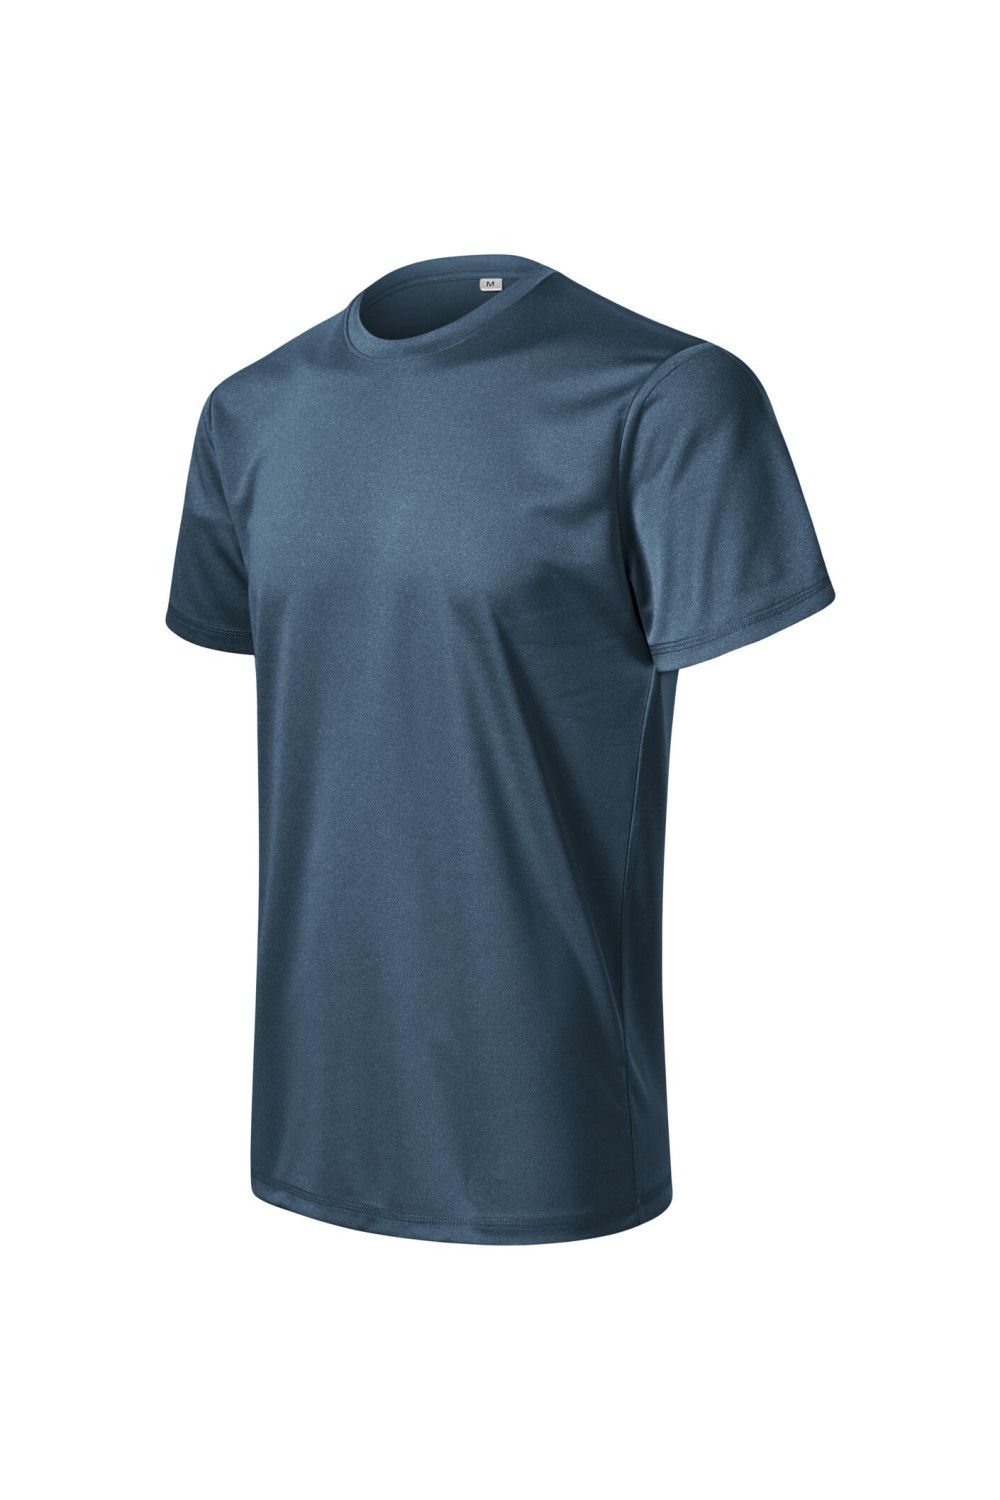 CHANCE (GRS) 810 MALFINI ADLER Koszulka męska t-shirt sportowy ciemny denim melanż